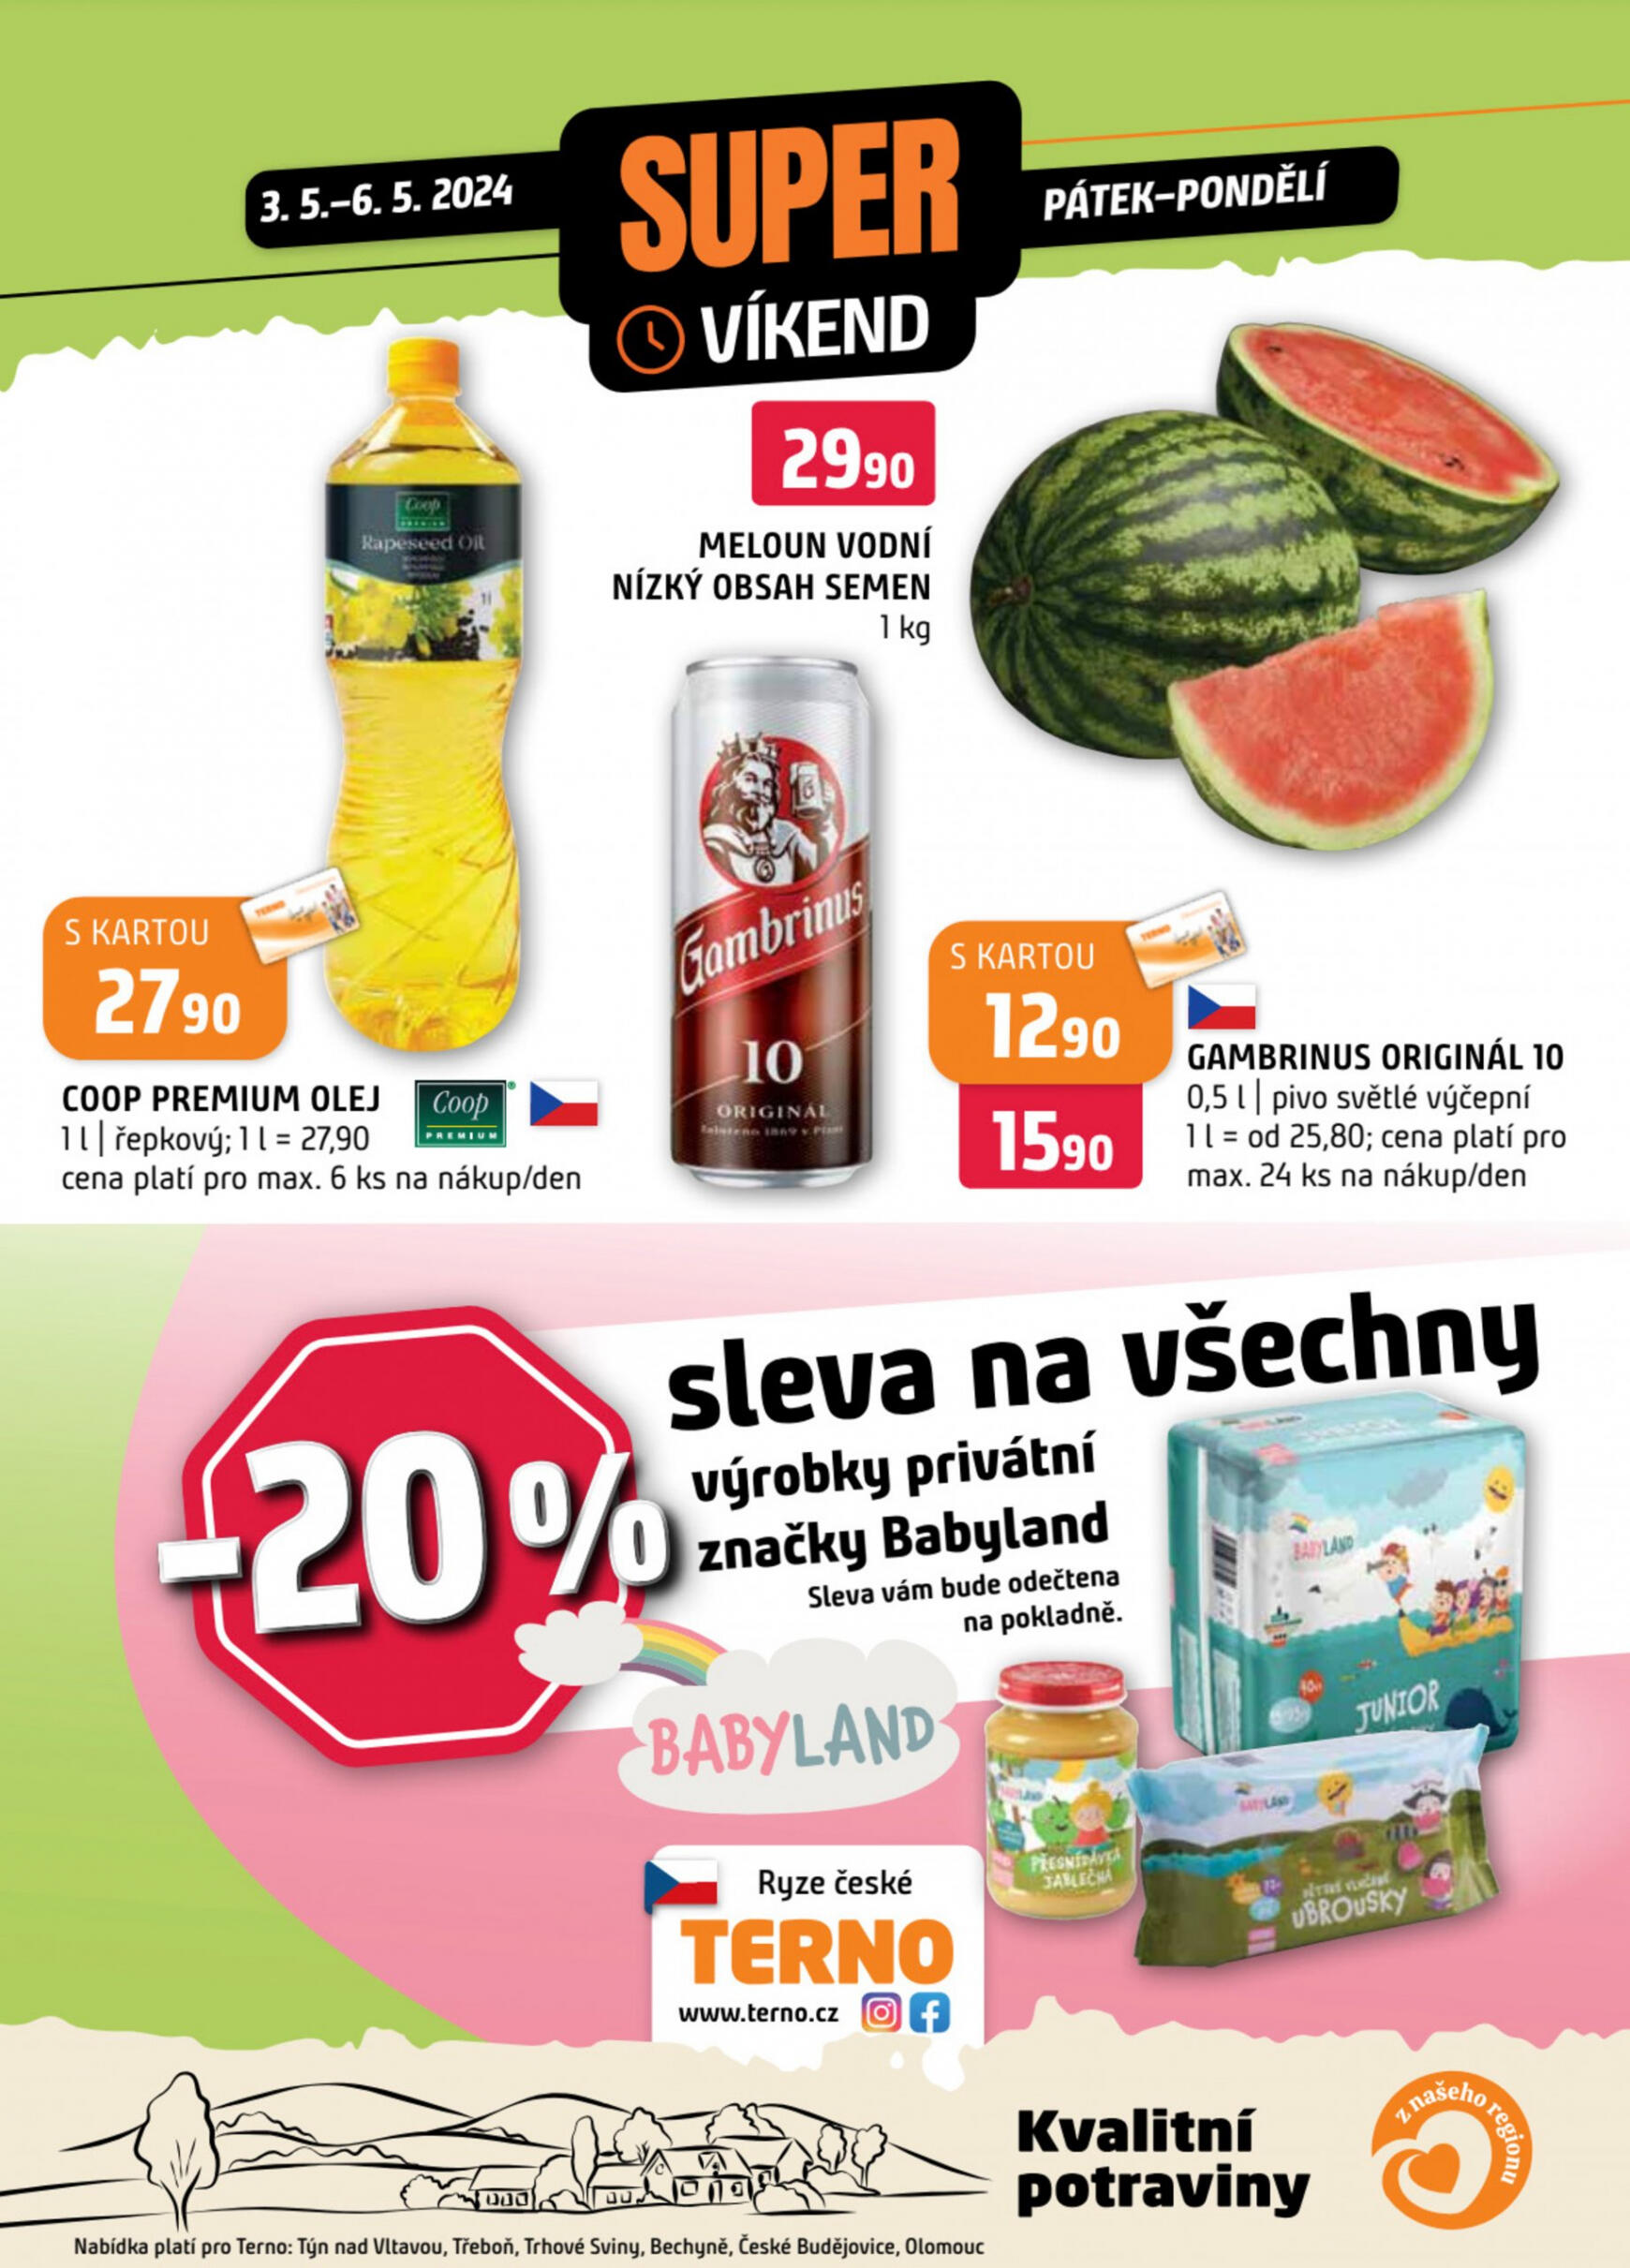 terno - Leták Terno - Super víkend aktuální 03.05. - 06.05. - page: 1